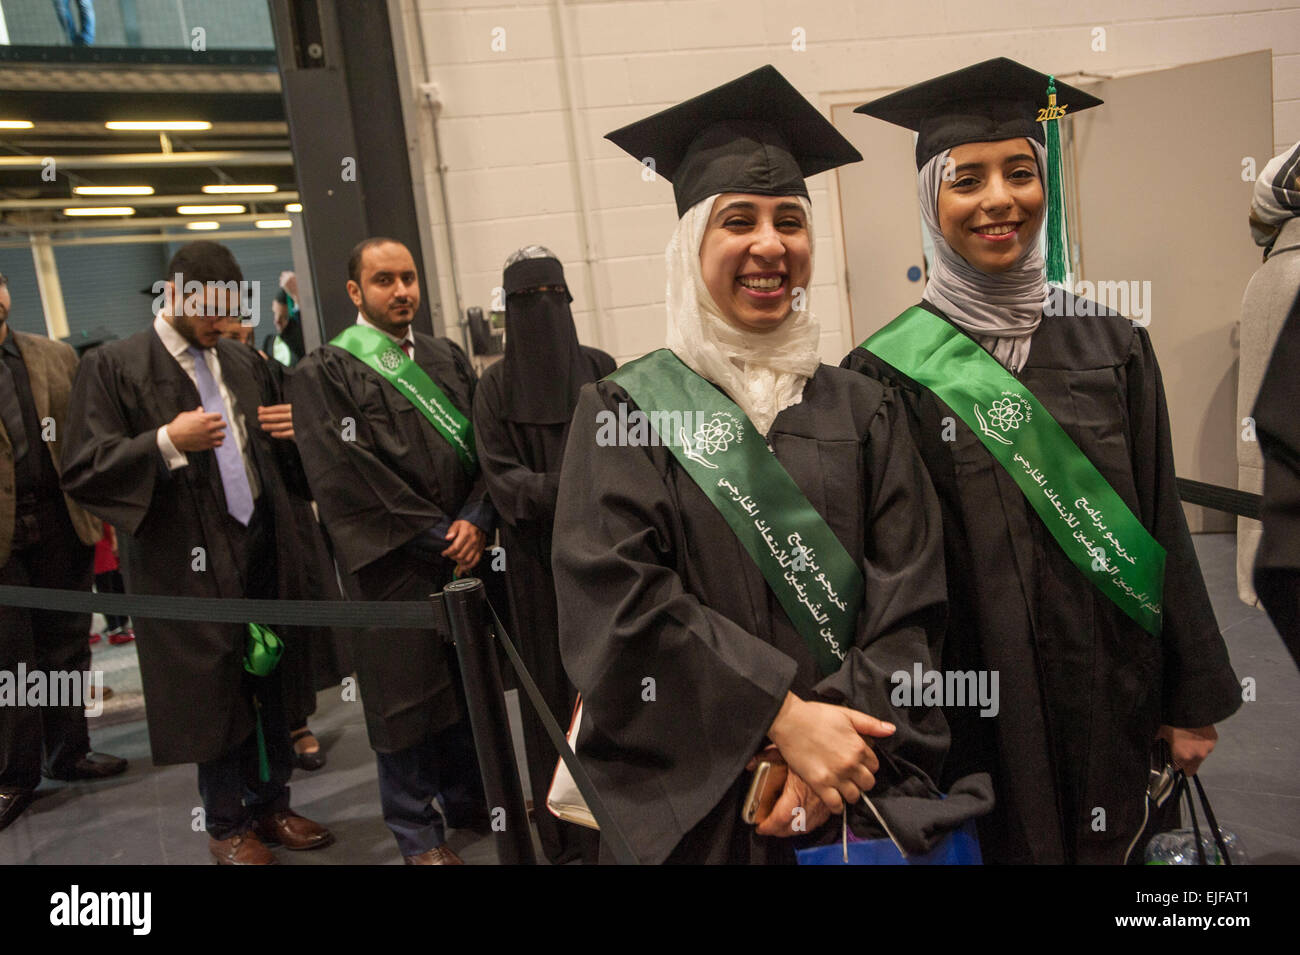 En attente pour l'obtention de leur diplôme, les diplômés en neurosciences  snap du King's College de Londres , des ressortissants saoudiens au Bureau  culturel de l'Arabie saoudite a accueilli la 5e cérémonie